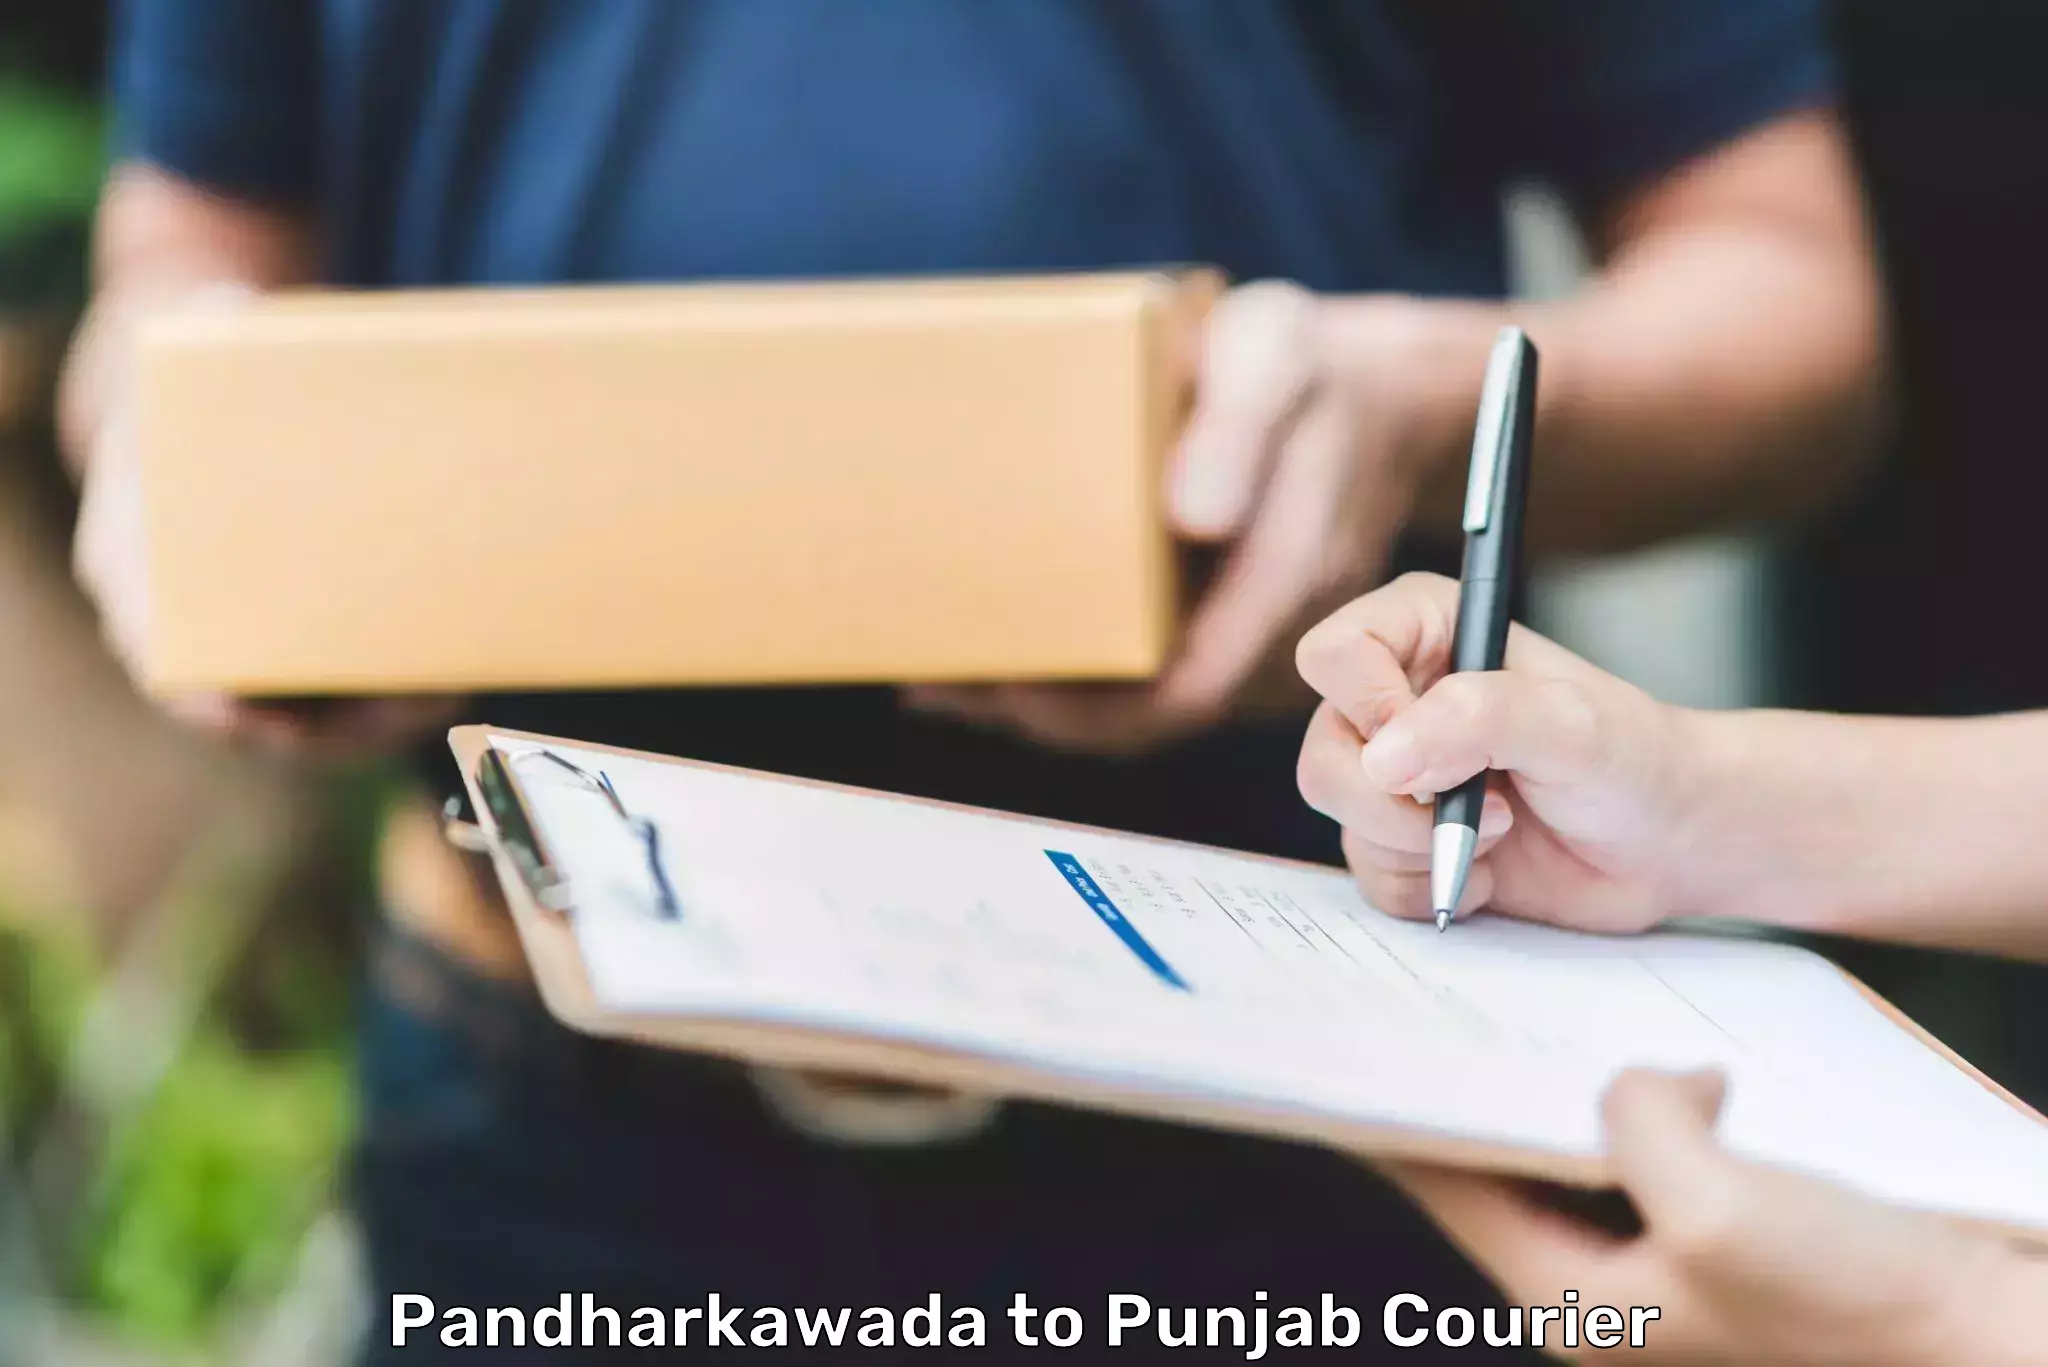 Express logistics providers Pandharkawada to Punjab